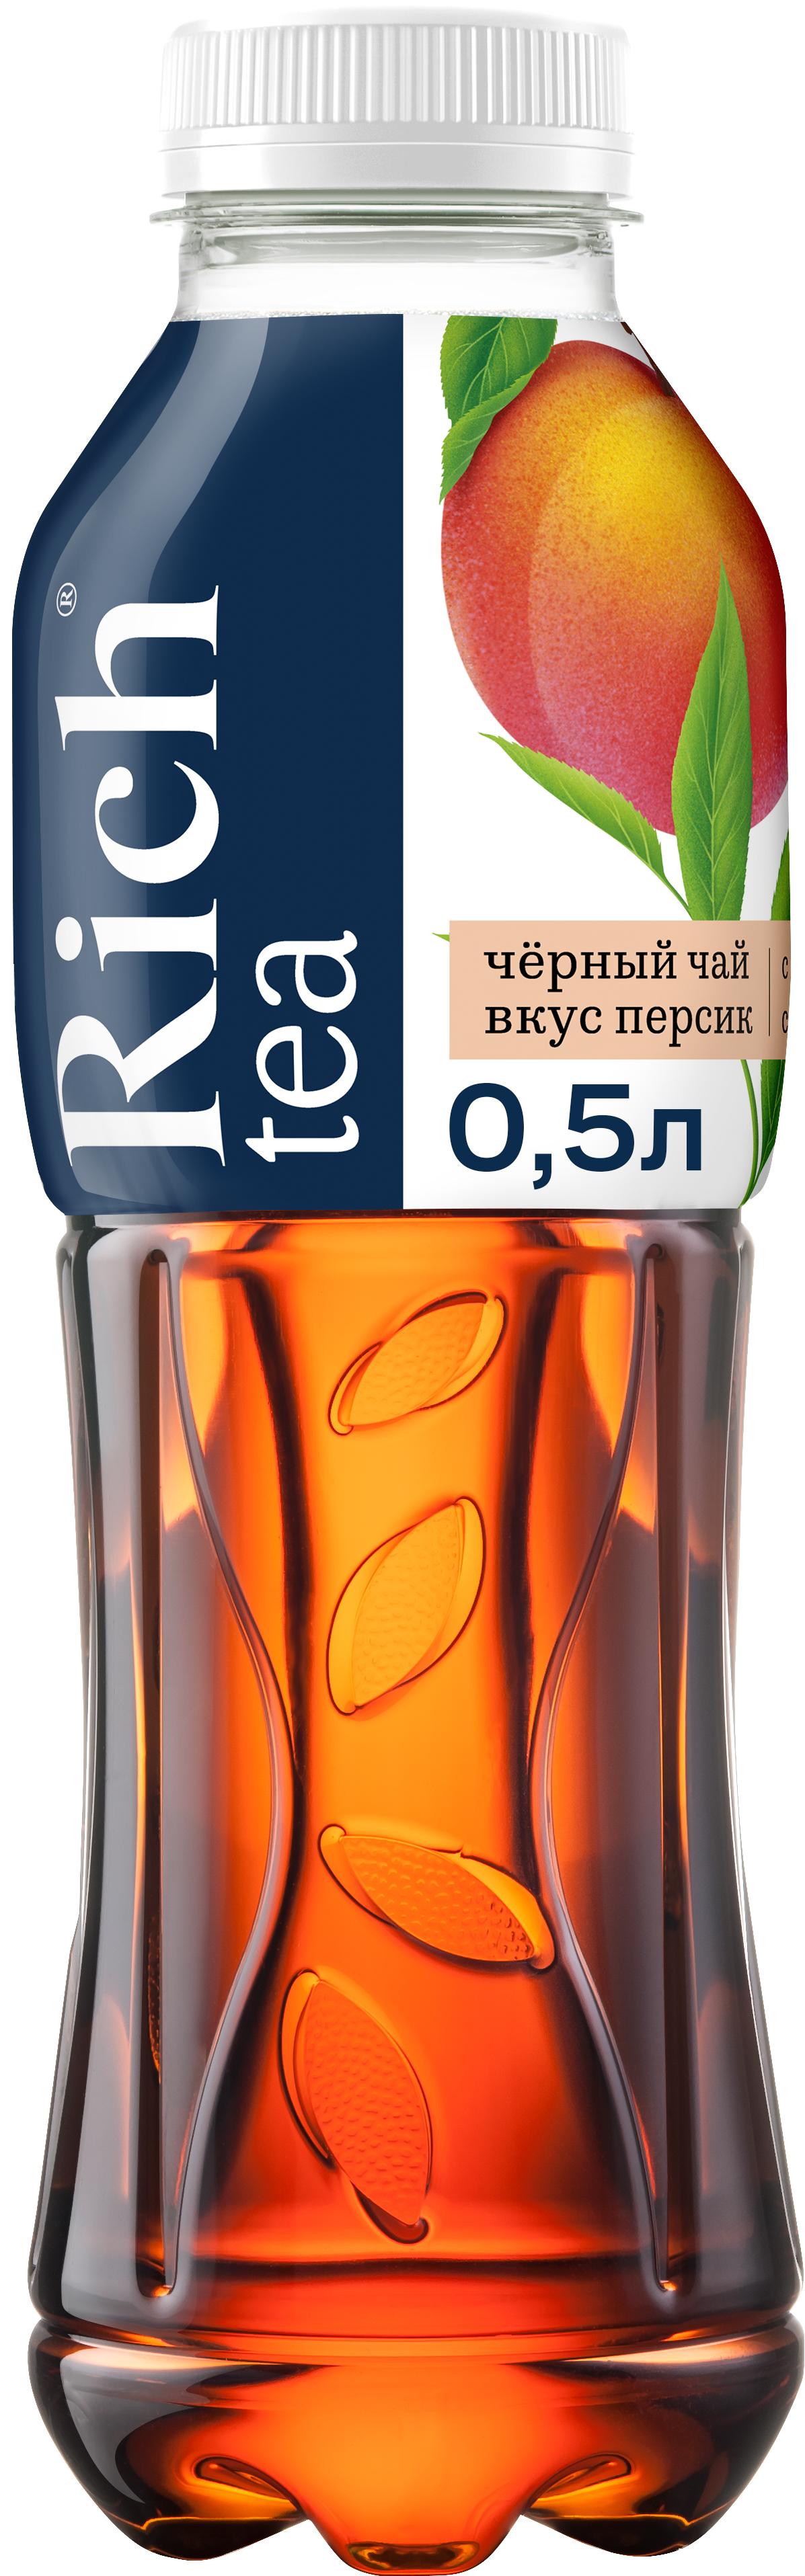 Напиток Rich Черный чай со вкусом персика, 500 мл., ПЭТ